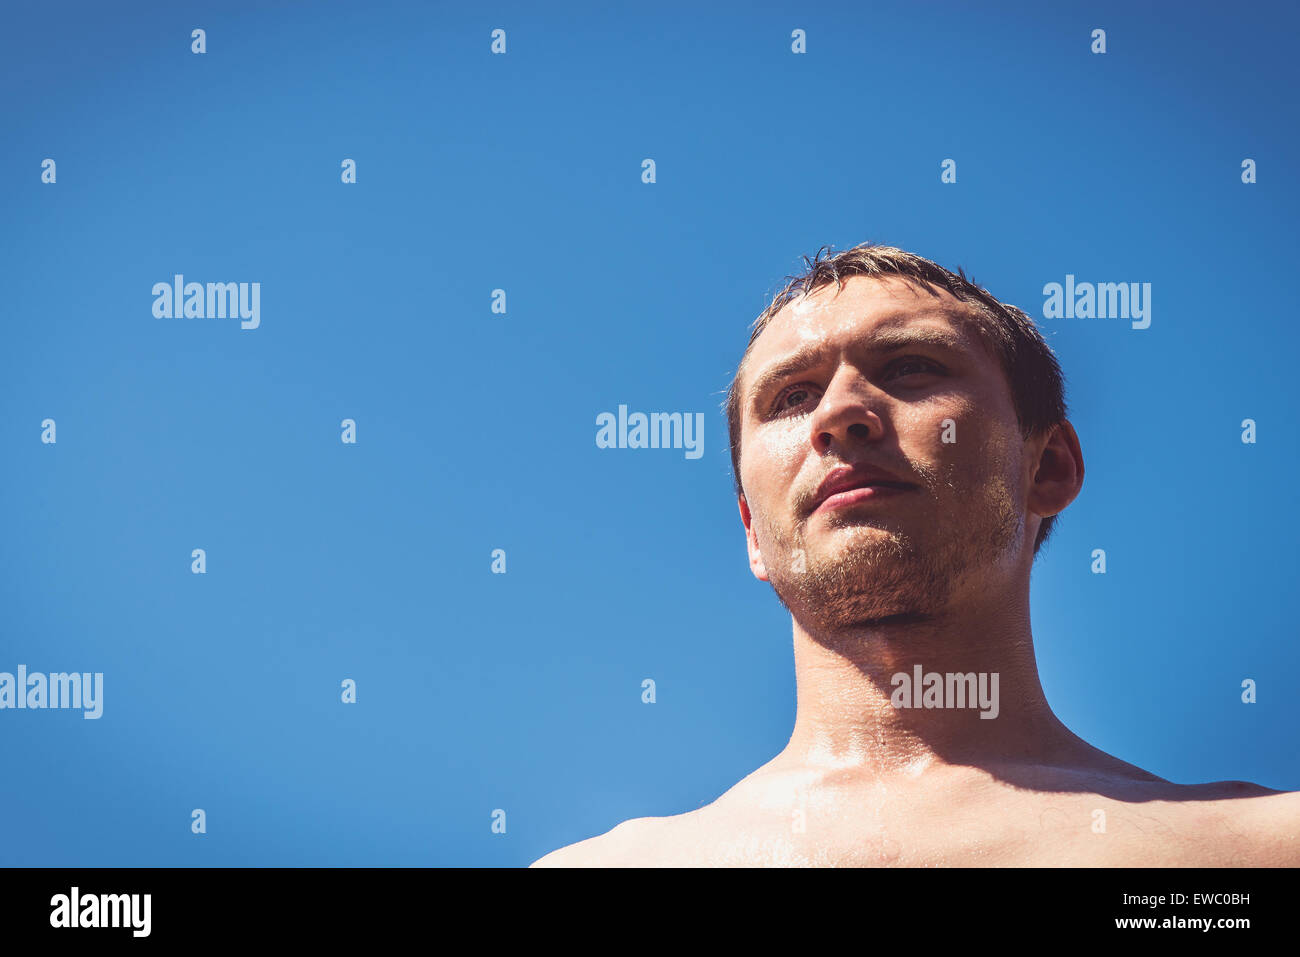 L'homme couvert de sueur et l'eau contre le ciel bleu épais. Banque D'Images